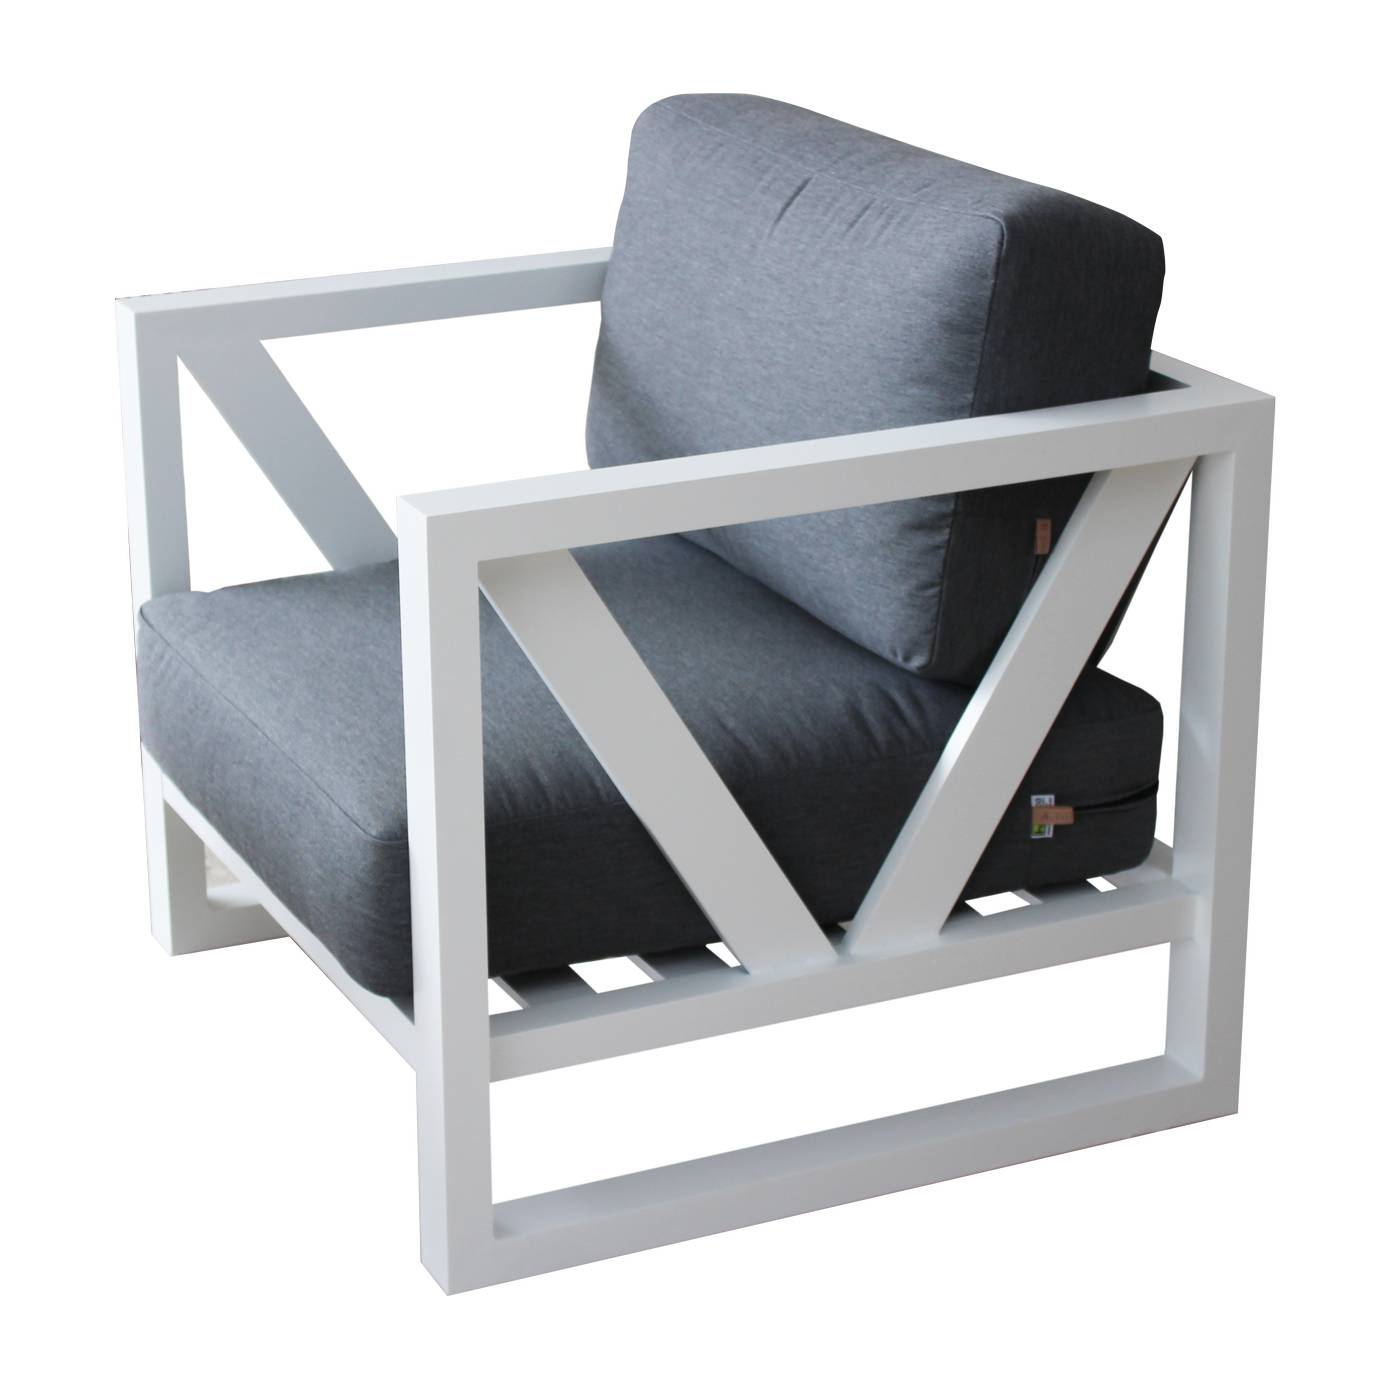 Set Aluminio Luxe Ventus-10 - Lujoso conjunto de aluminio: sofá 3 plazas + 2 sillones + mesa de centro + 2 taburetes. Color conjunto: blanco, antracita o champagne.